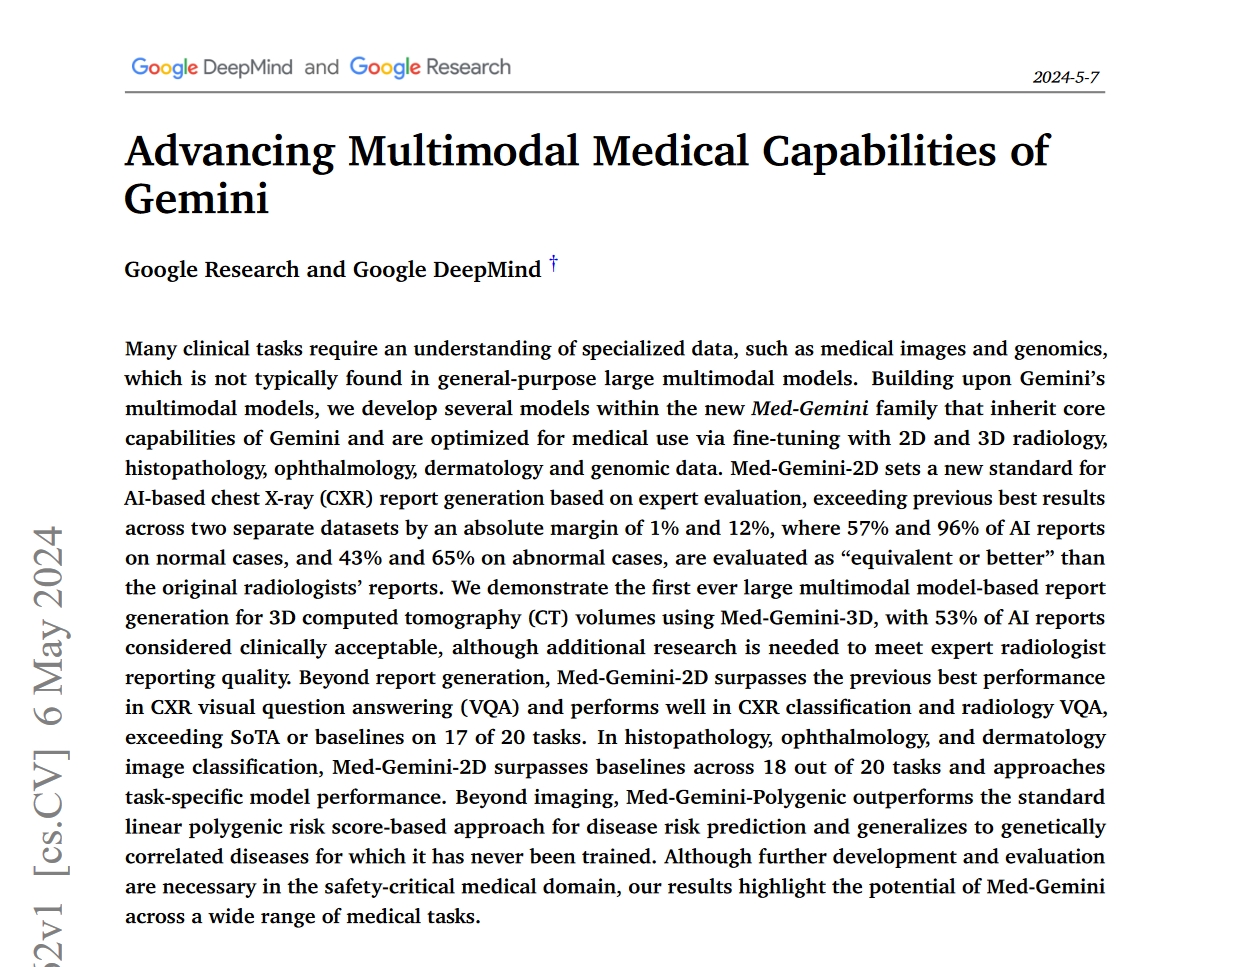 Med-Gemini de Google surpasse OpenAI GPT-4 en matière de diagnostic, mais pouvons-nous lui faire confiance ?